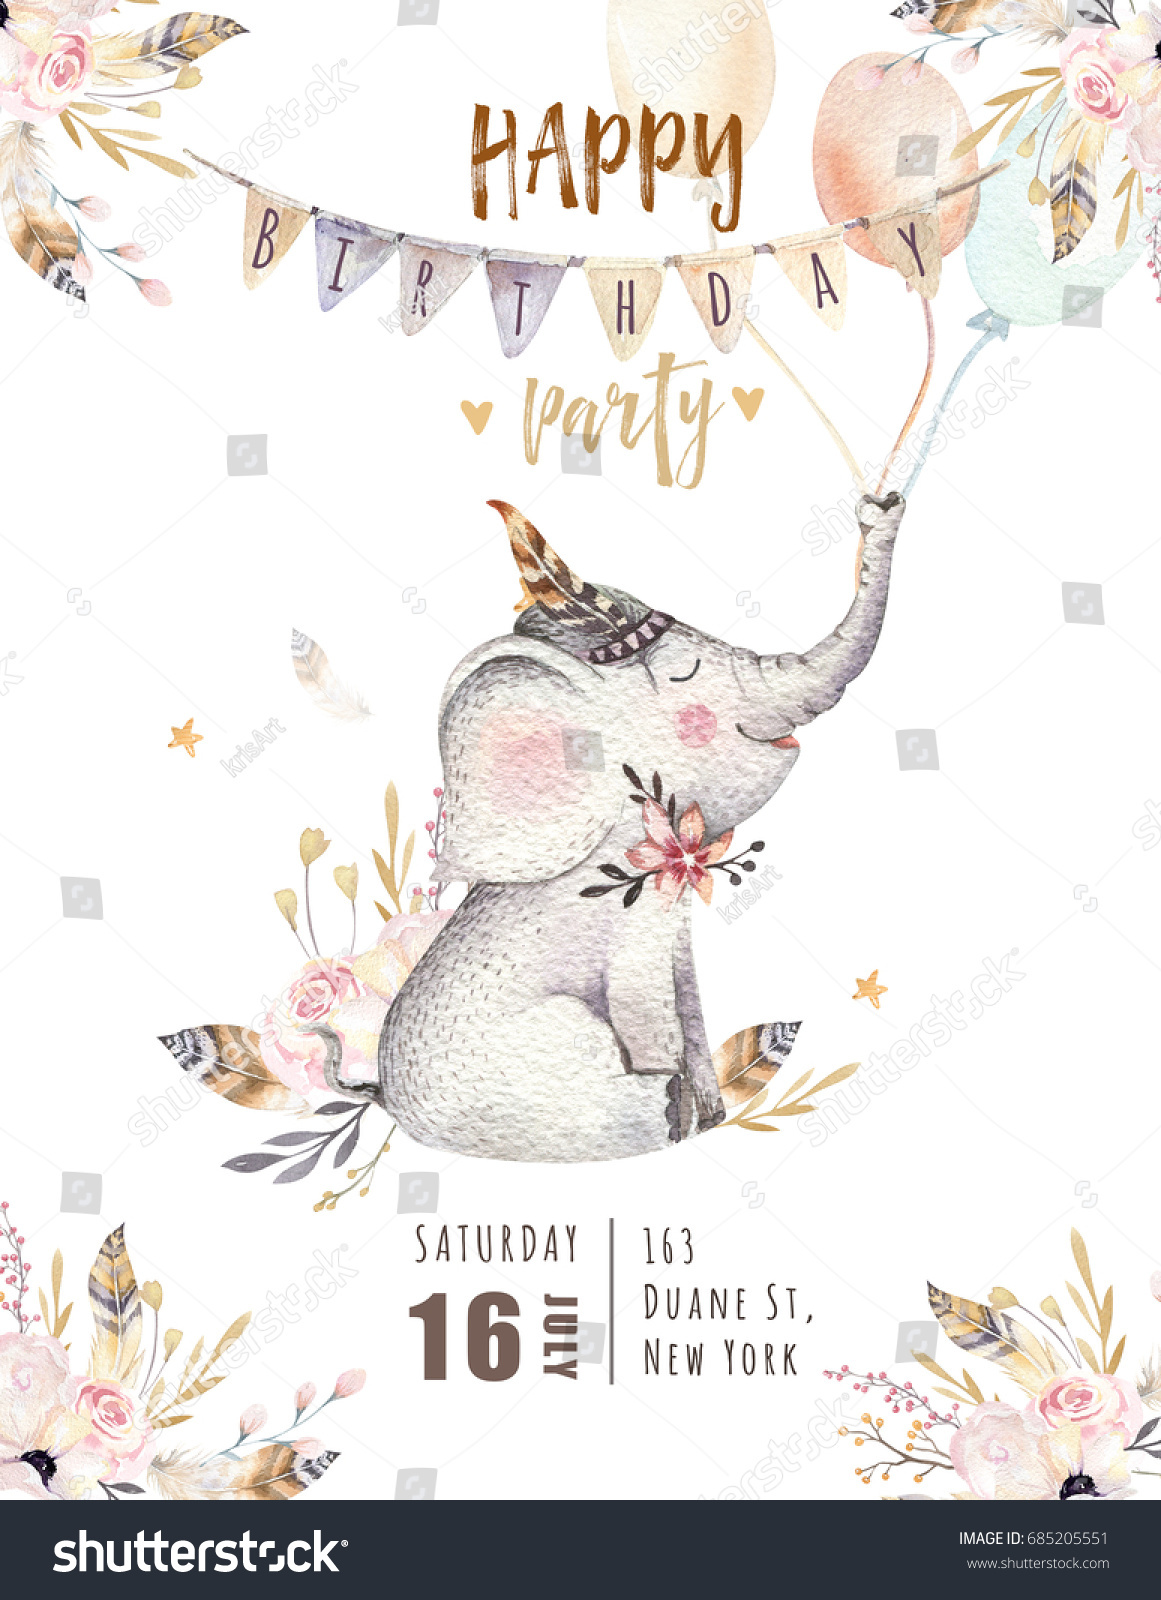 子ども向けのかわいい子ゾウの保育園動物 ボヘミアの水彩ボホの森象科図 水彩画 コドモ部屋のポスター 柄に最適 誕生日の招待 のイラスト素材